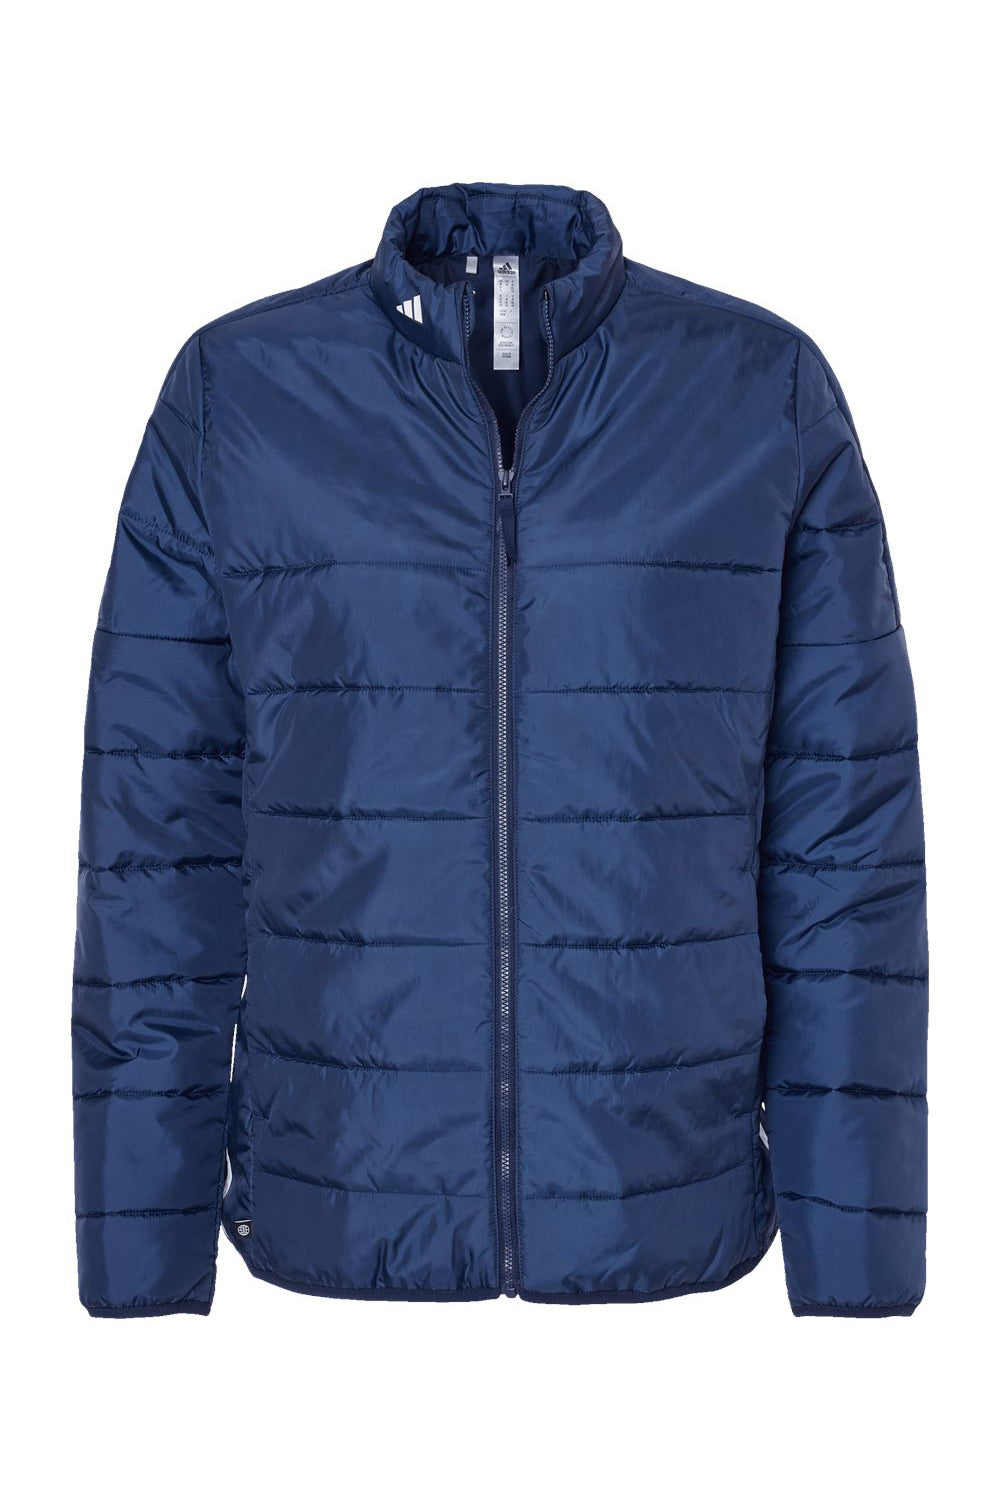 Adidas A571 Womens Full Zip Puffer Jacket Team Navy Blue Flat Front